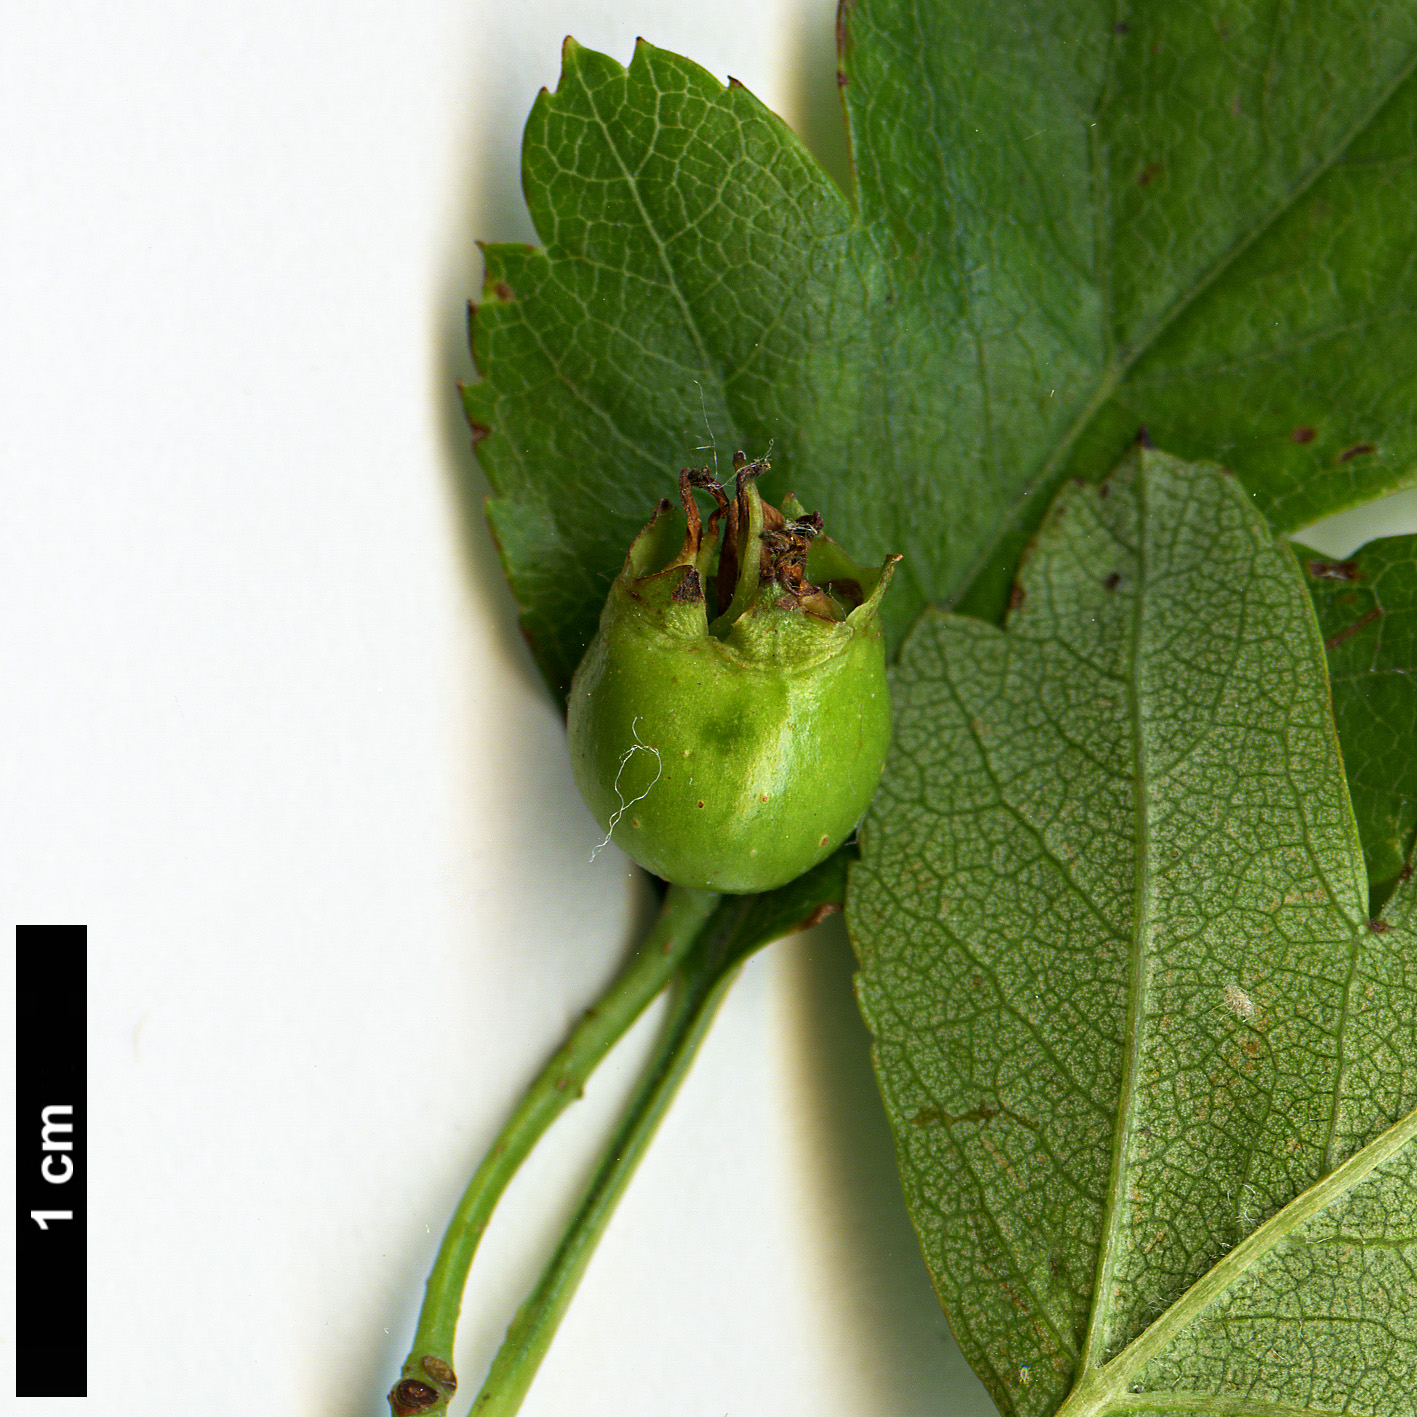 High resolution image: Family: Rosaceae - Genus: Crataegus - Taxon: ×media - SpeciesSub: 'Paul's Scarlet' (C.laevigata × C.monogyna)